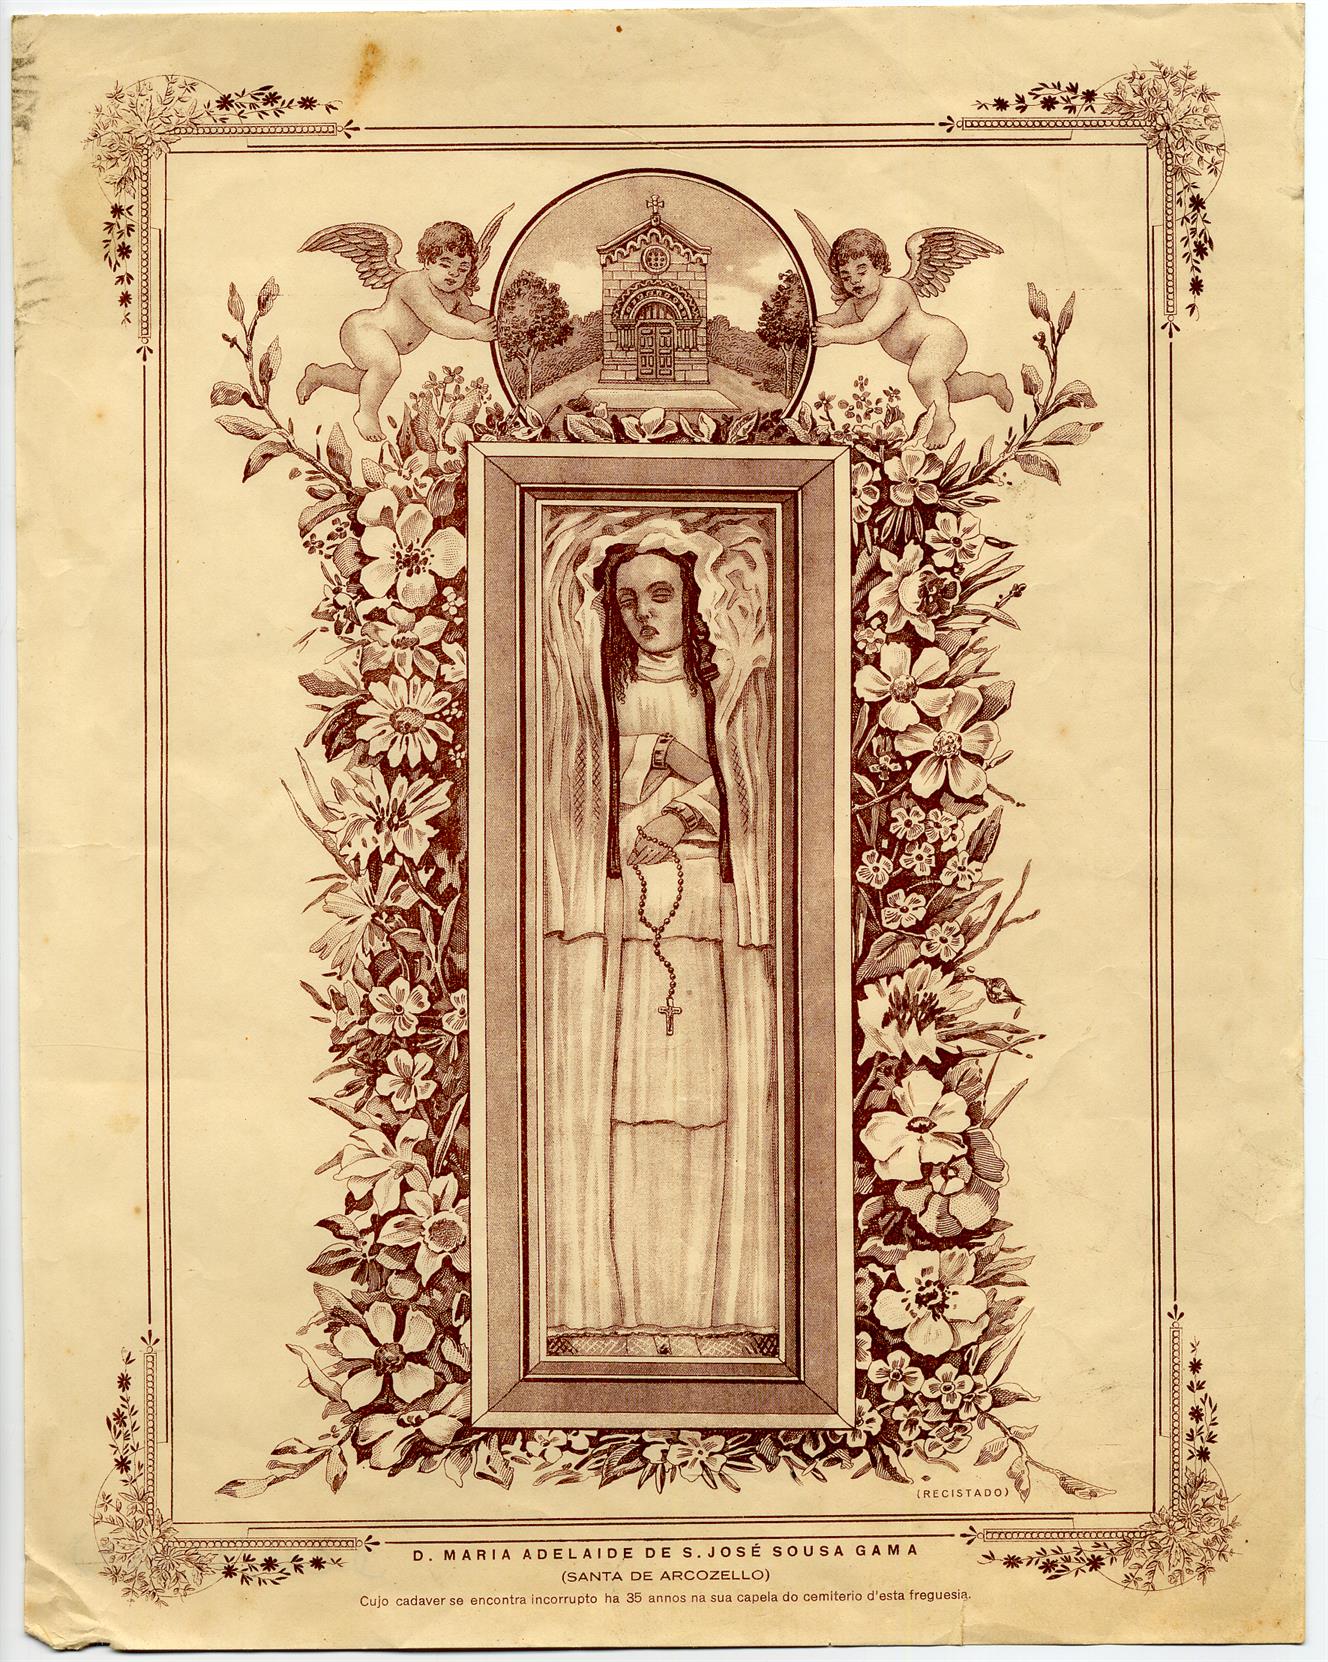 Dona Maria Adelaide de São José Sousa Gama : Santa de Arcozelo